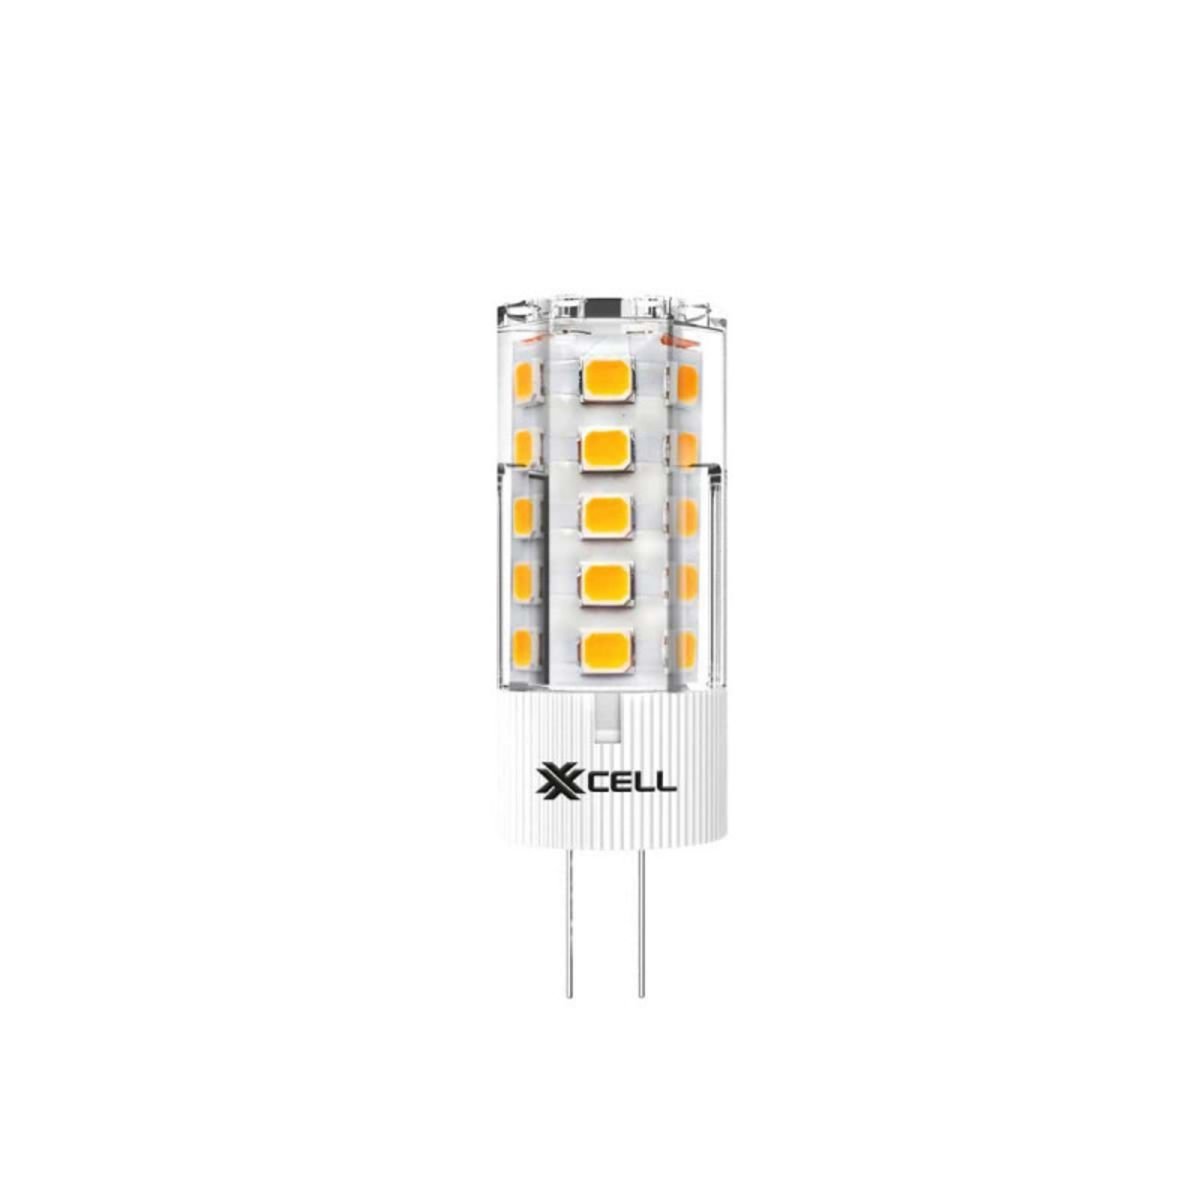  Ampoule LED XXCELL BI PIN - G4 12V 2.5W équivalent 25W